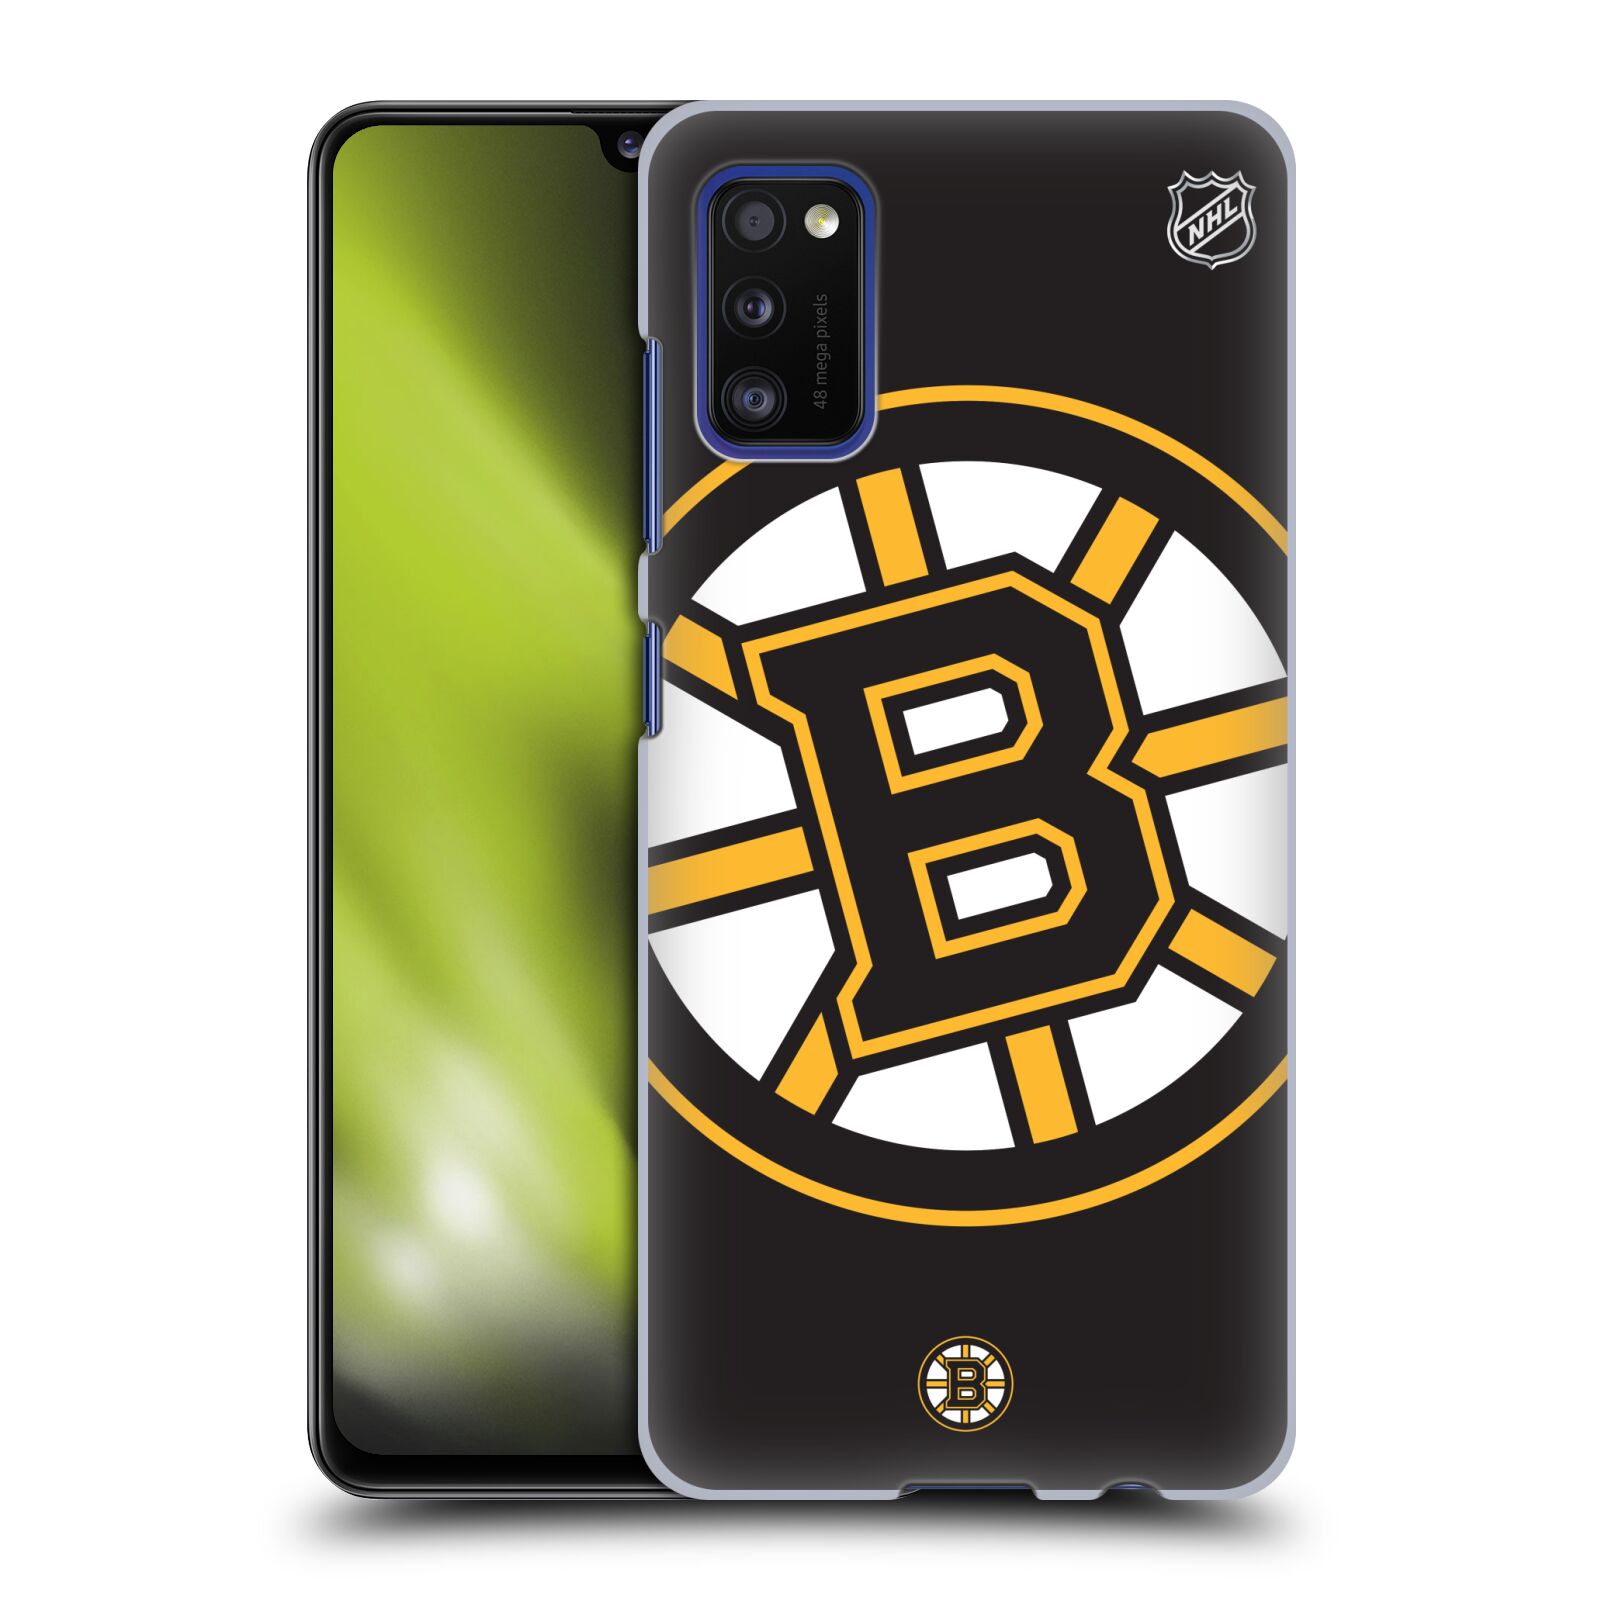 Pouzdro na mobil Samsung Galaxy A41 - HEAD CASE - Hokej NHL - Boston Bruins - velký znak